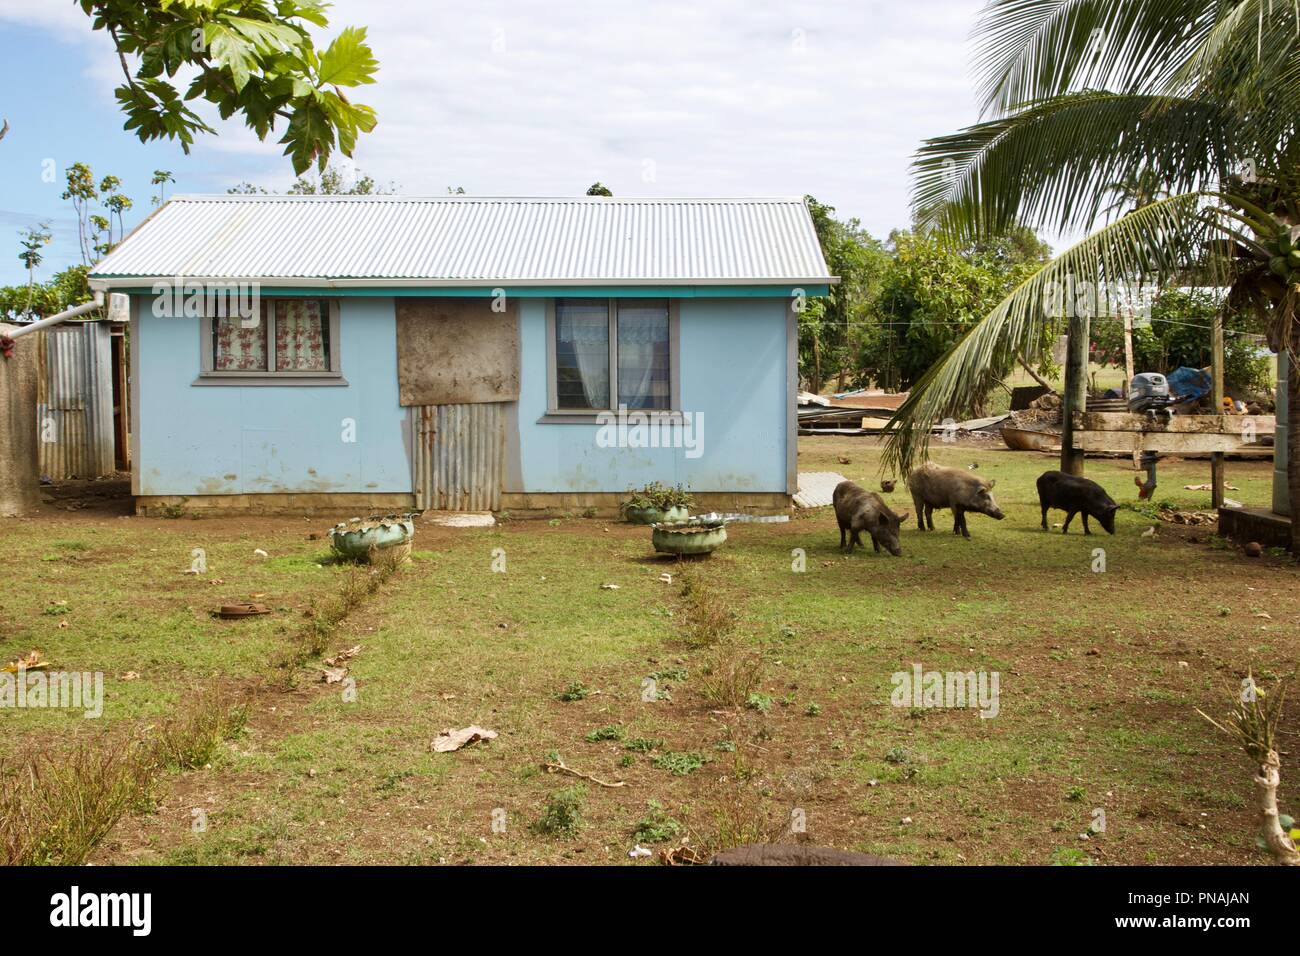 Un Tongan chambre à l'intérieur d'un village qui a les porcs à l'extérieur. Les porcs sont un symbole de richesse ou de statut et sont autorisés à se déplacer librement. Banque D'Images